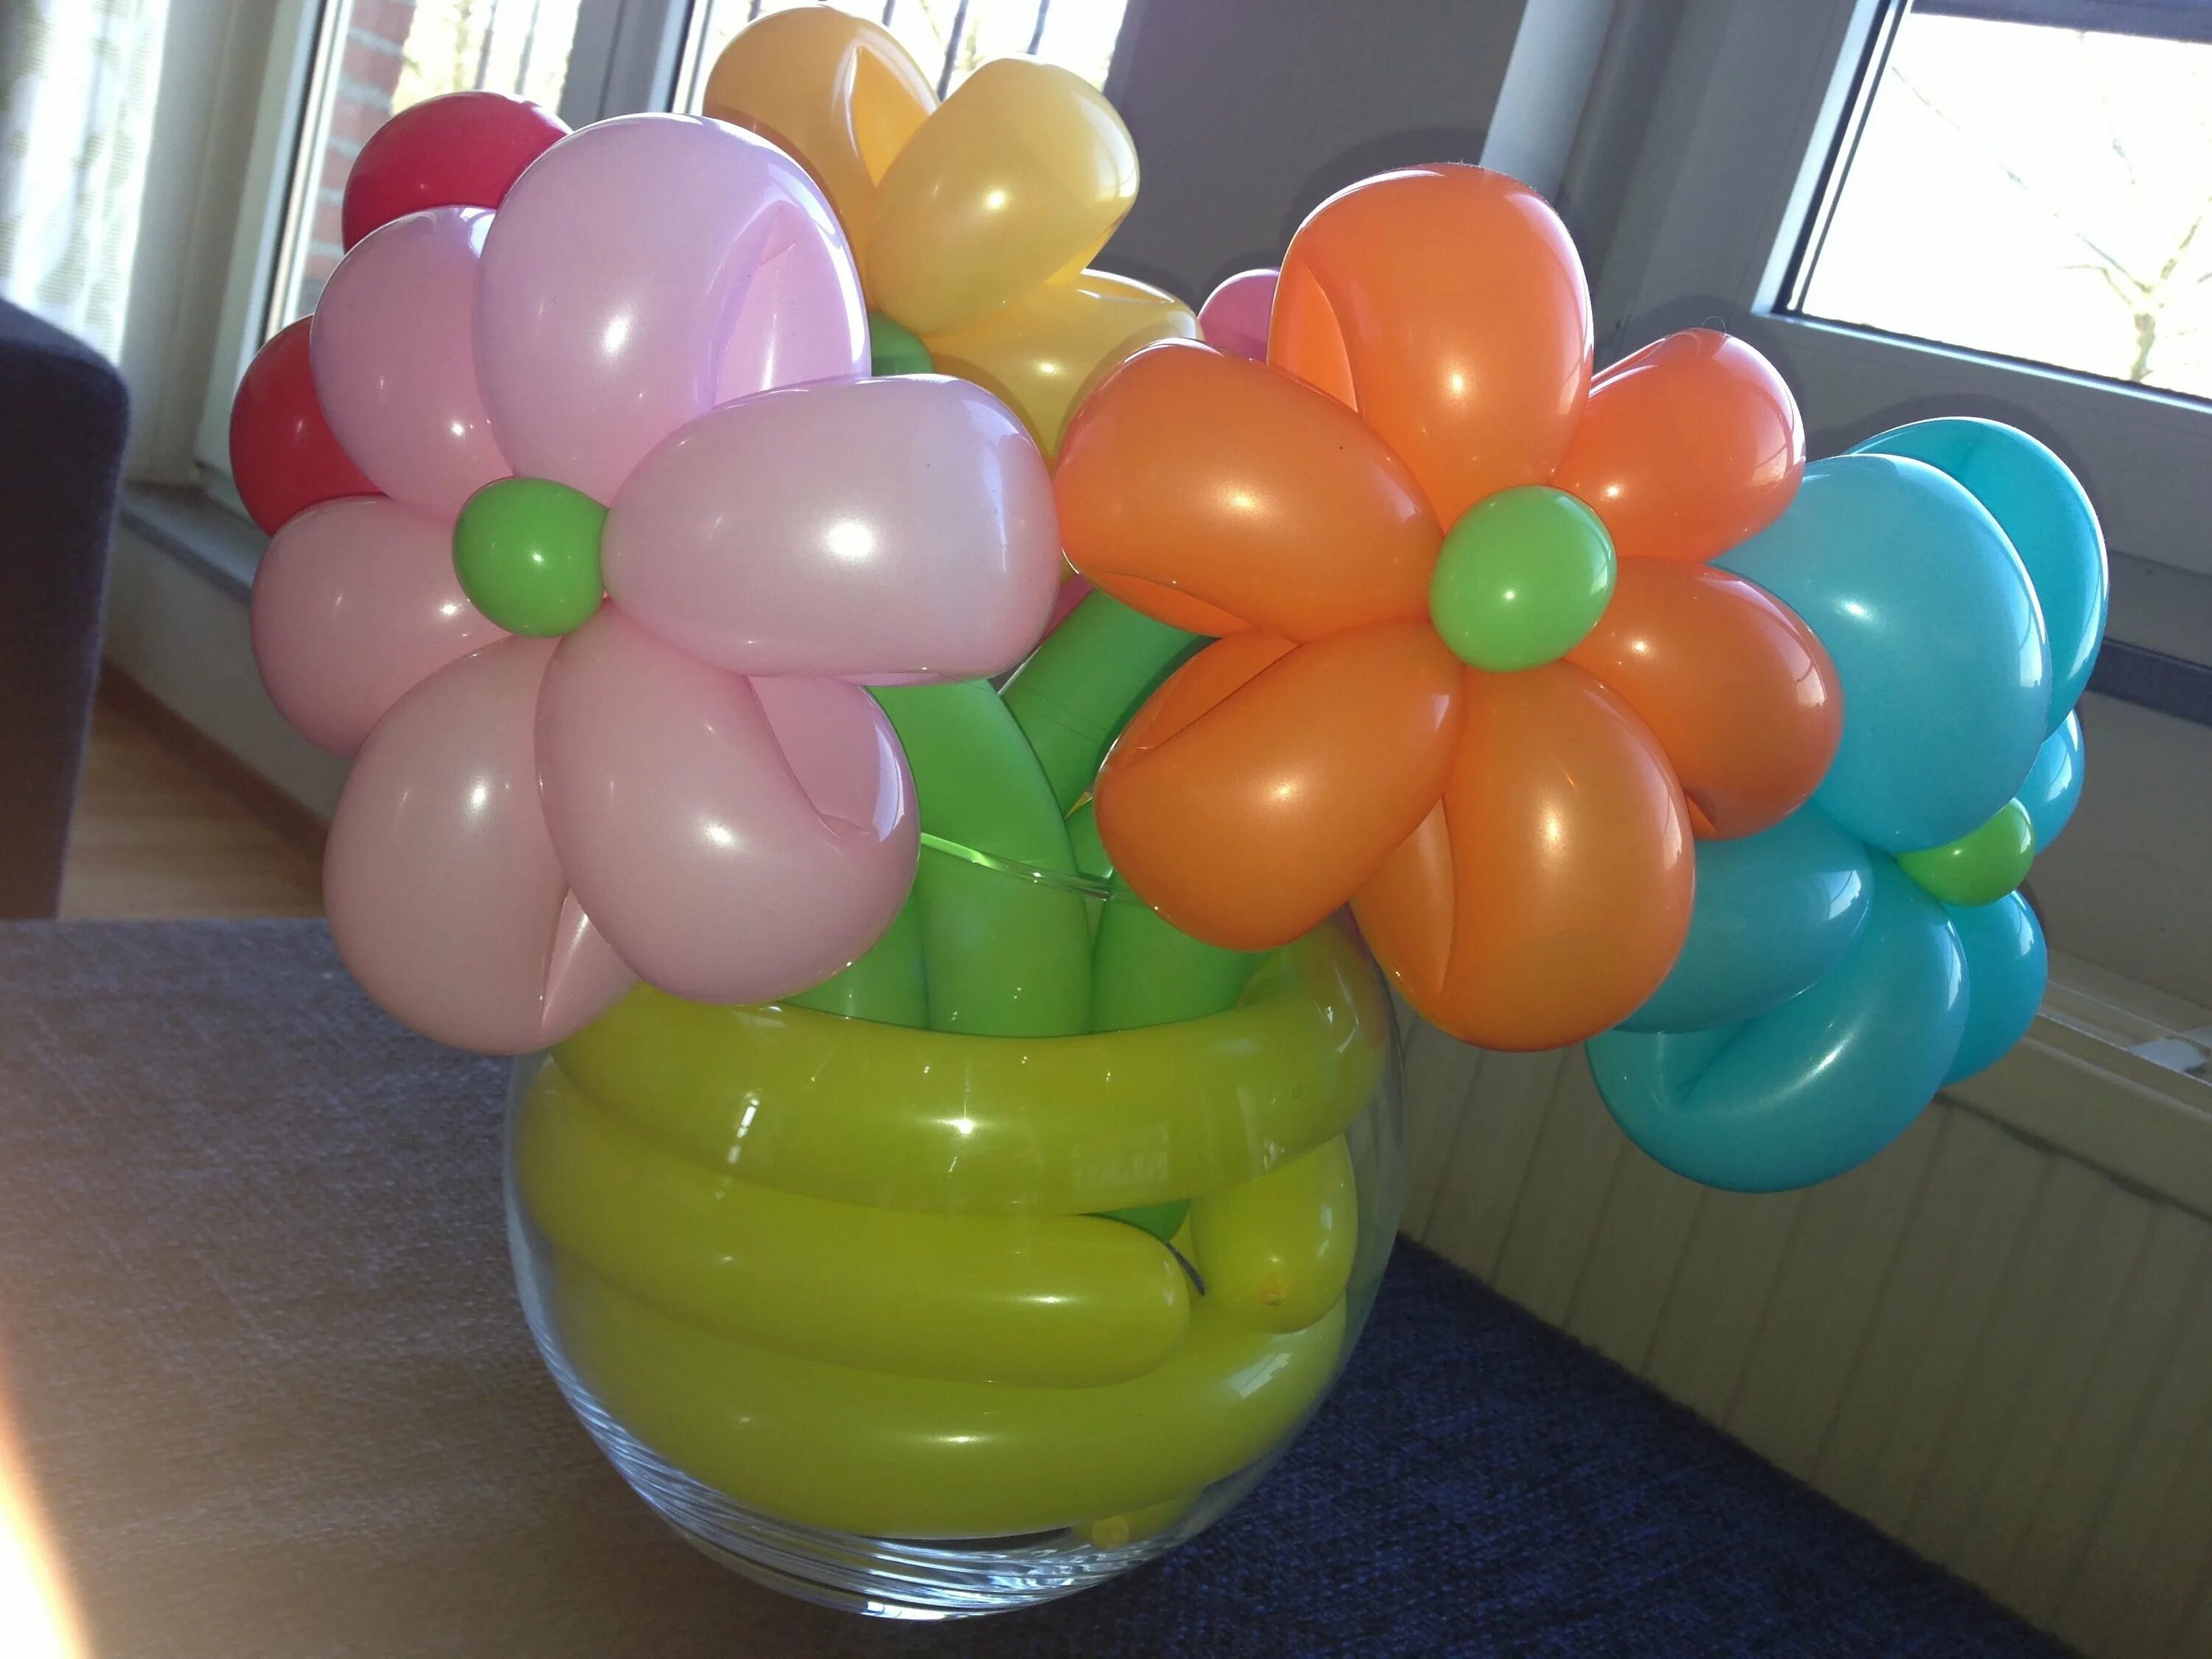 Аэродизайн шарами. Цветы из шаров. Цветы из круглых воздушных шаров. Цветы из шариков для моделирования. Цветы из шаров на подставке.